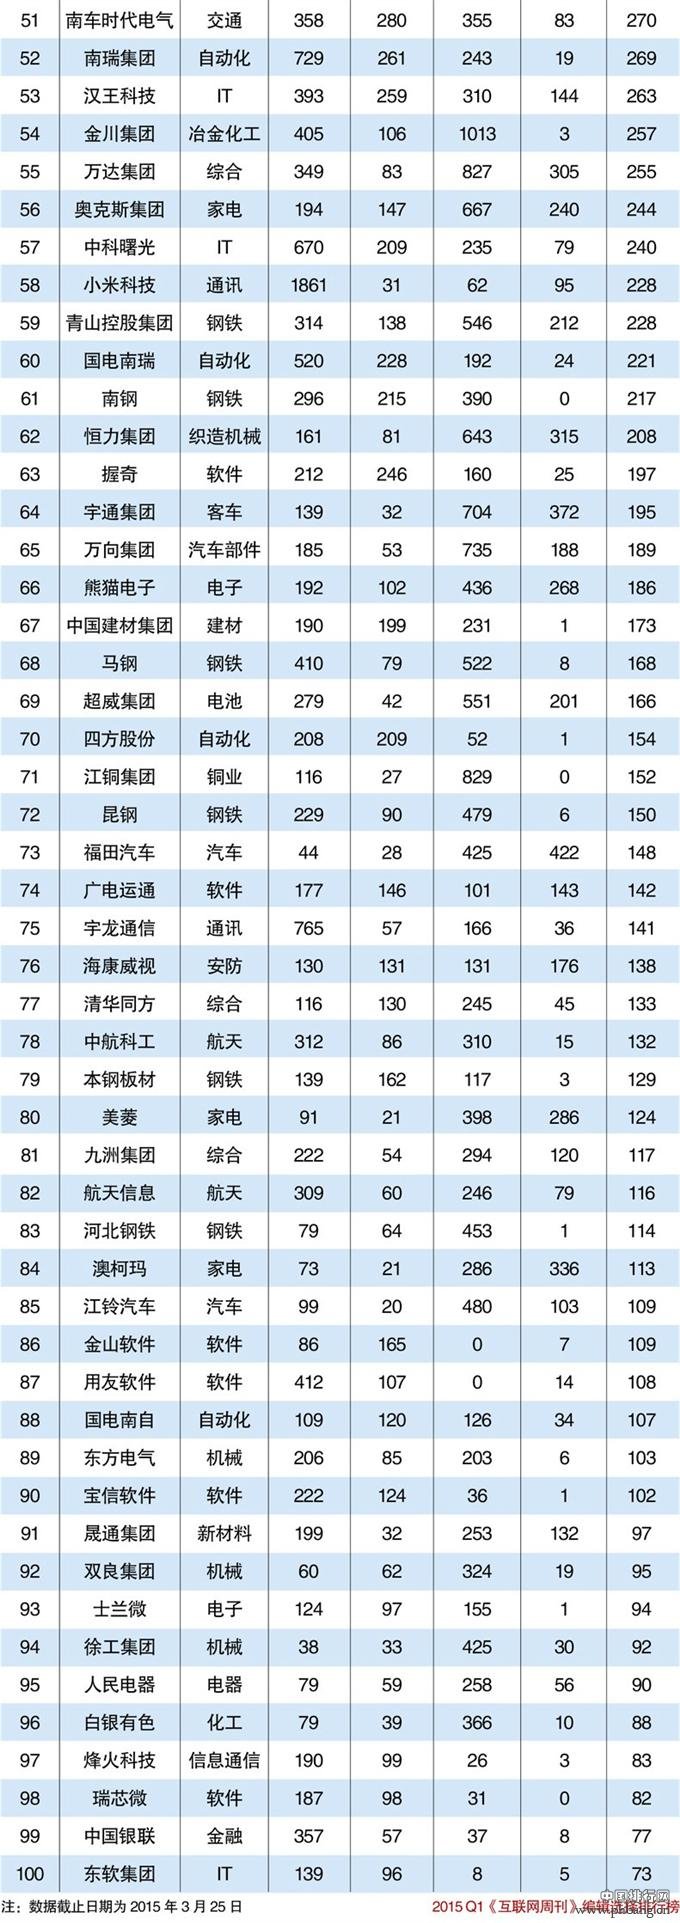 2015年中国智造企业排行榜TOP100